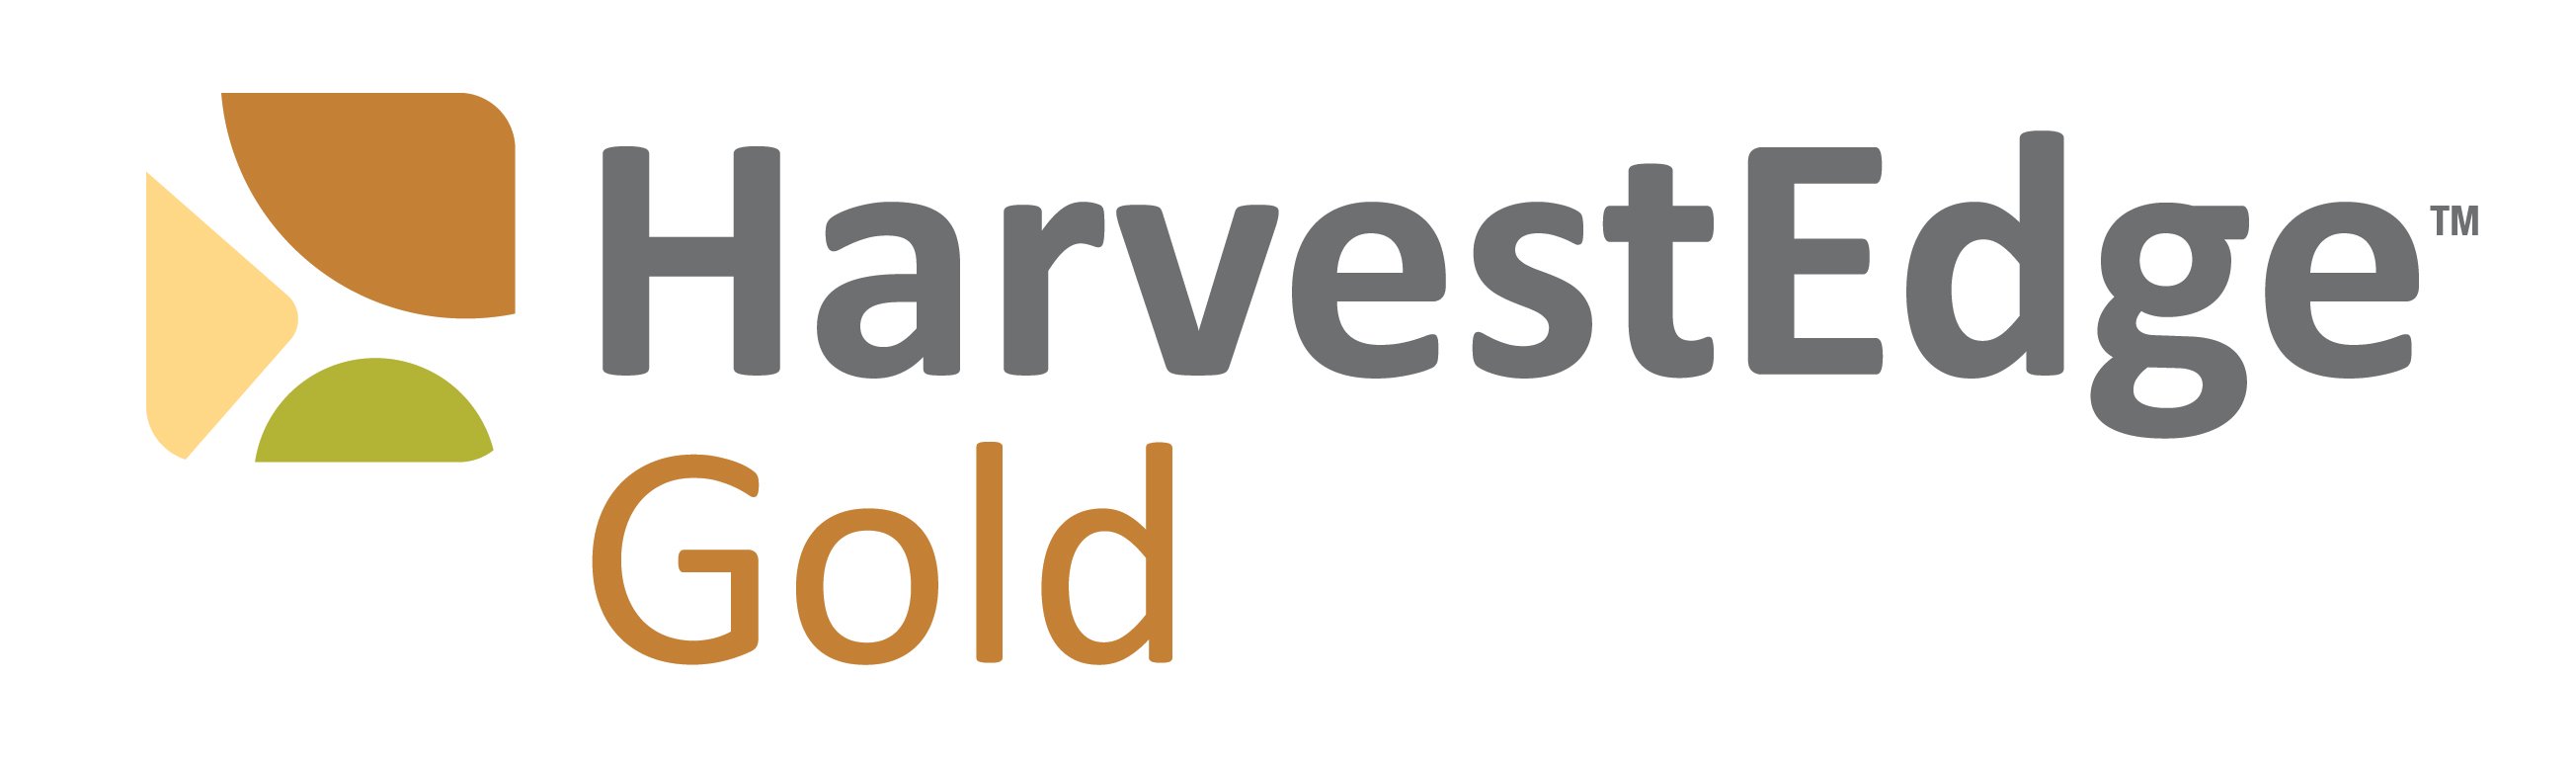 HarvestEdge Gold brand logo